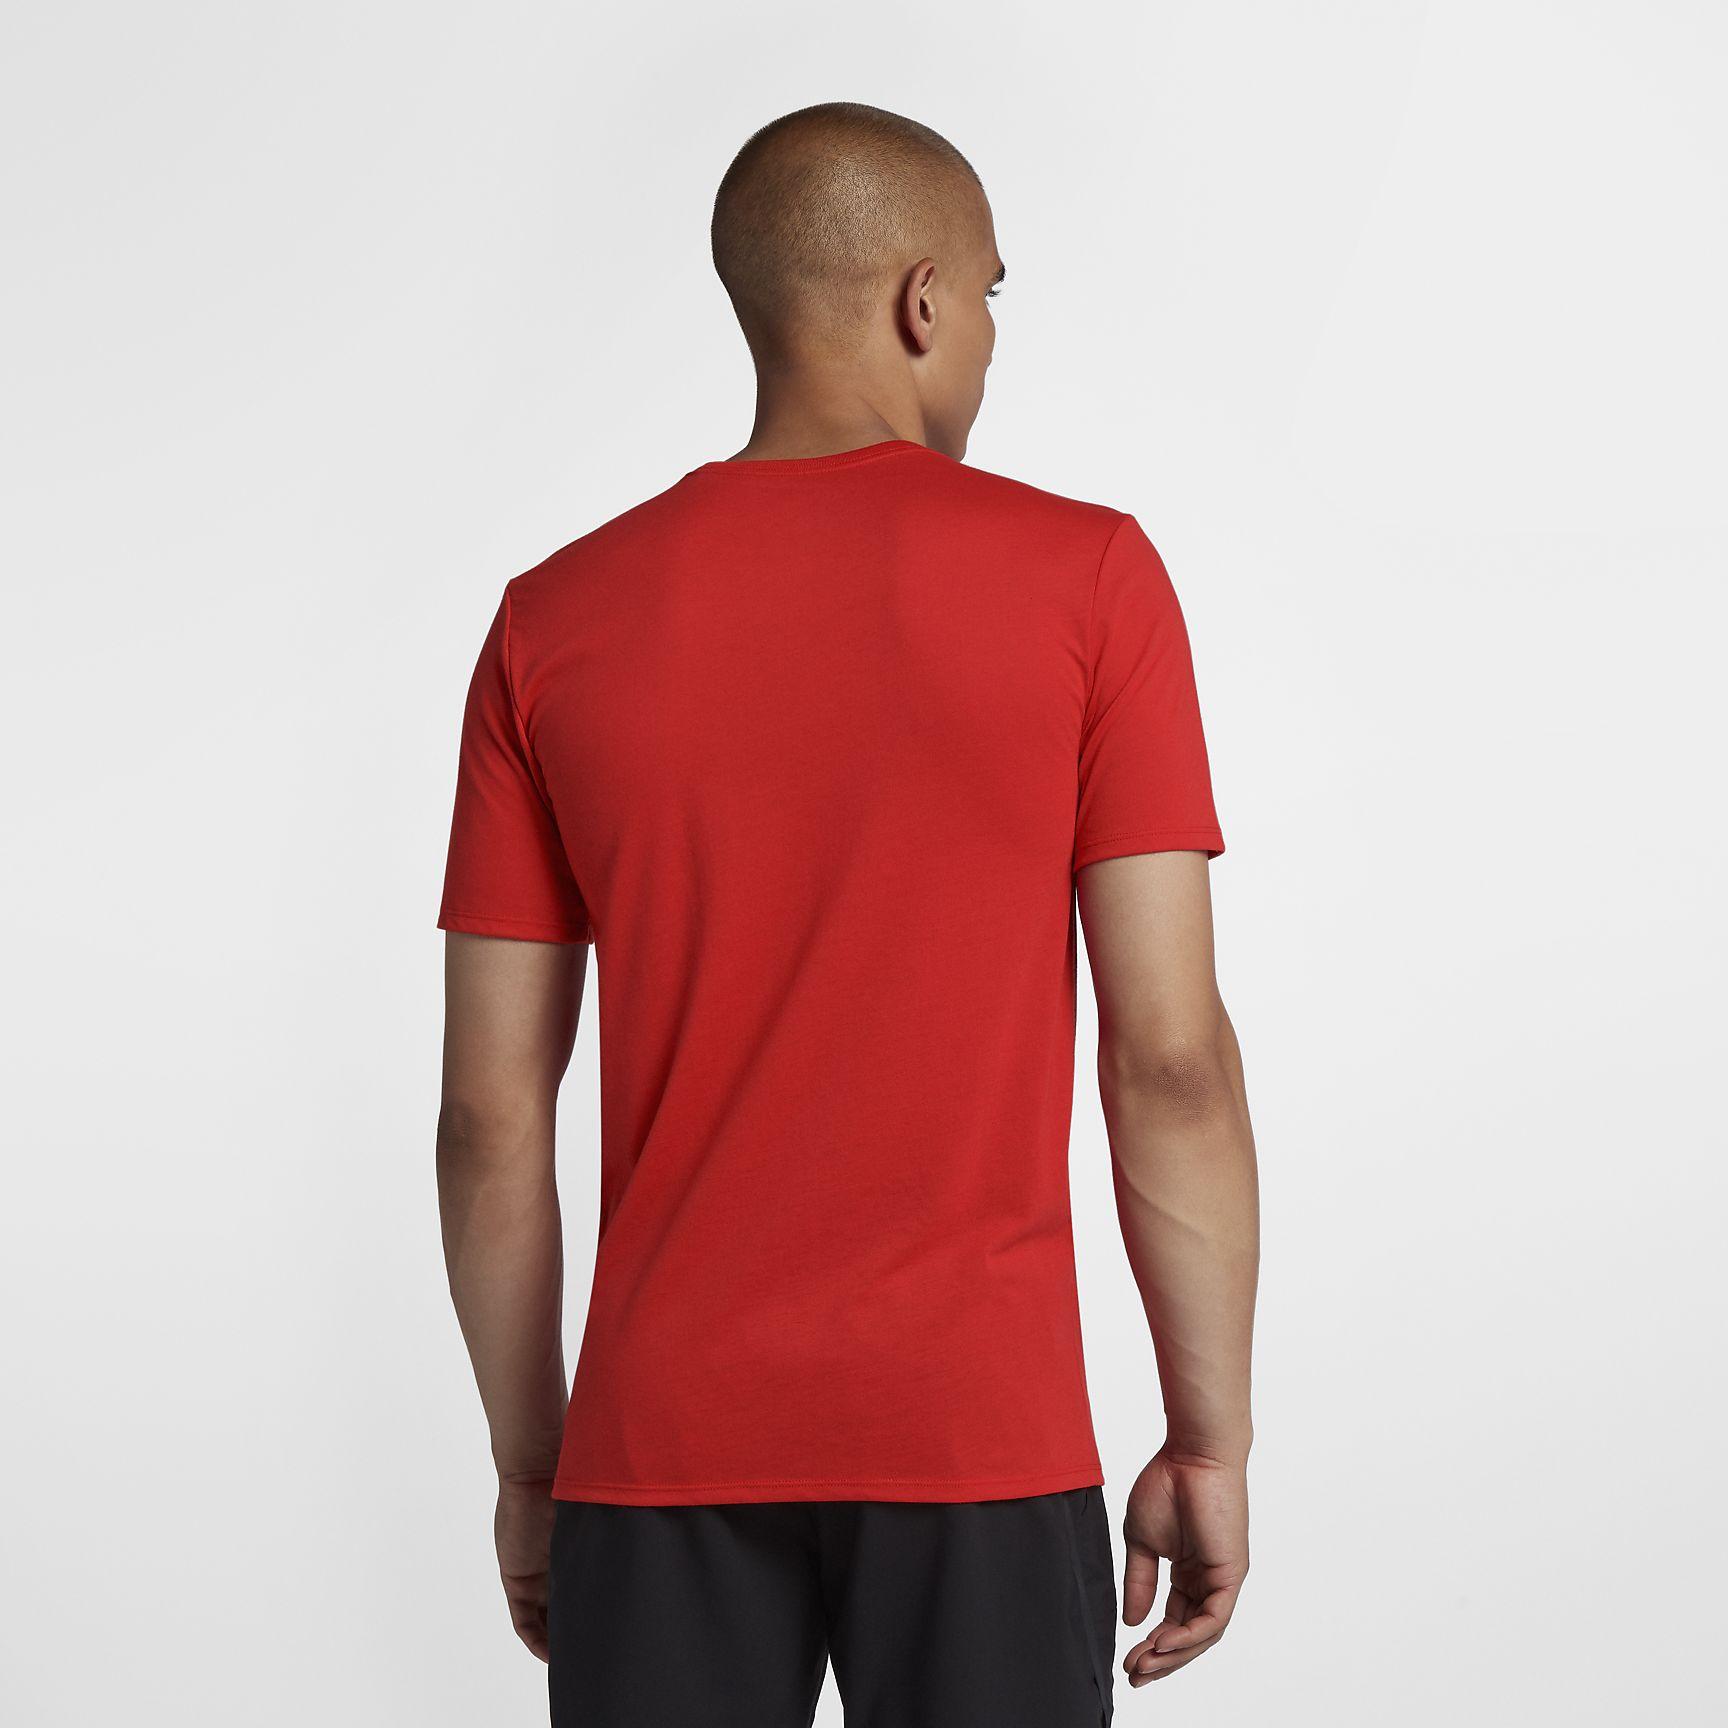 Nike Mens Dry Rafa T-Shirt - Habanero Red/Black - Tennisnuts.com